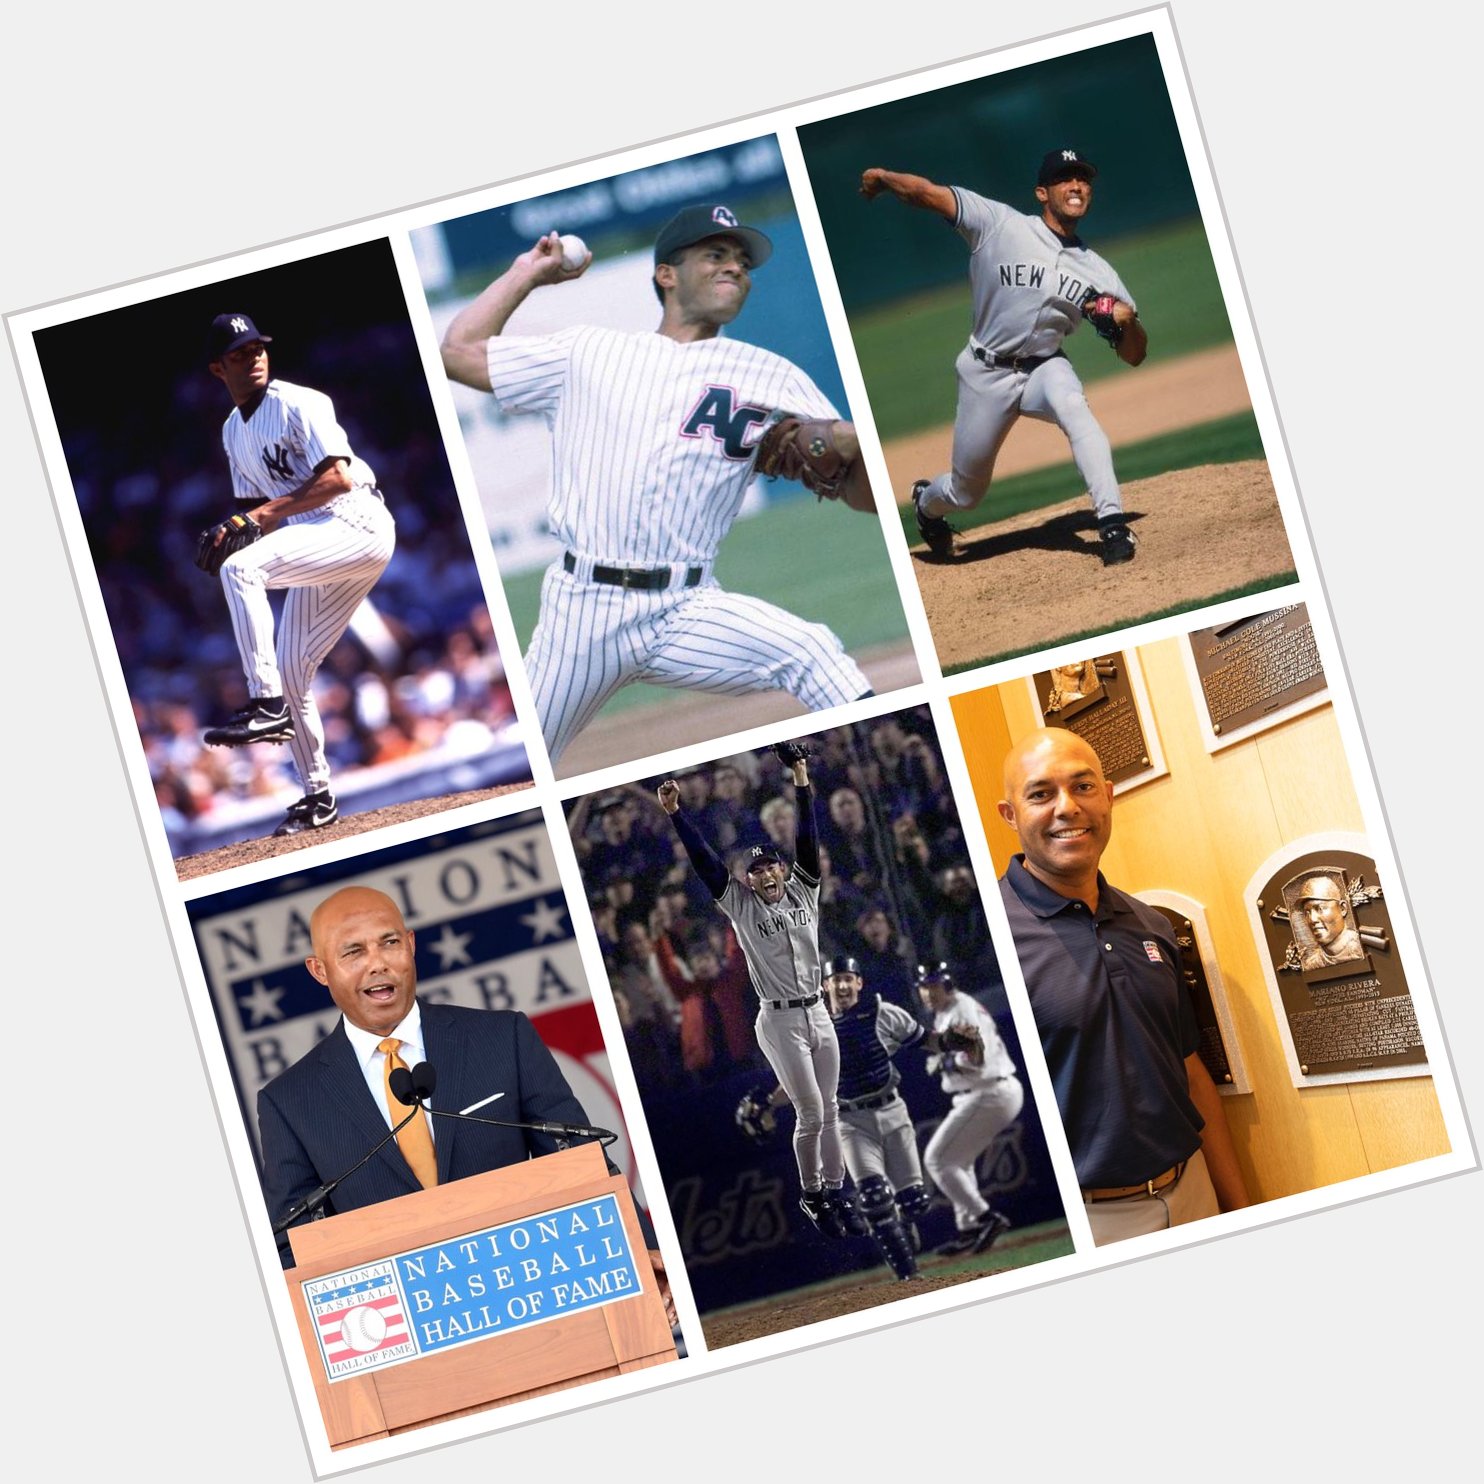 Happy baseball birthday to Mariano Rivera!  